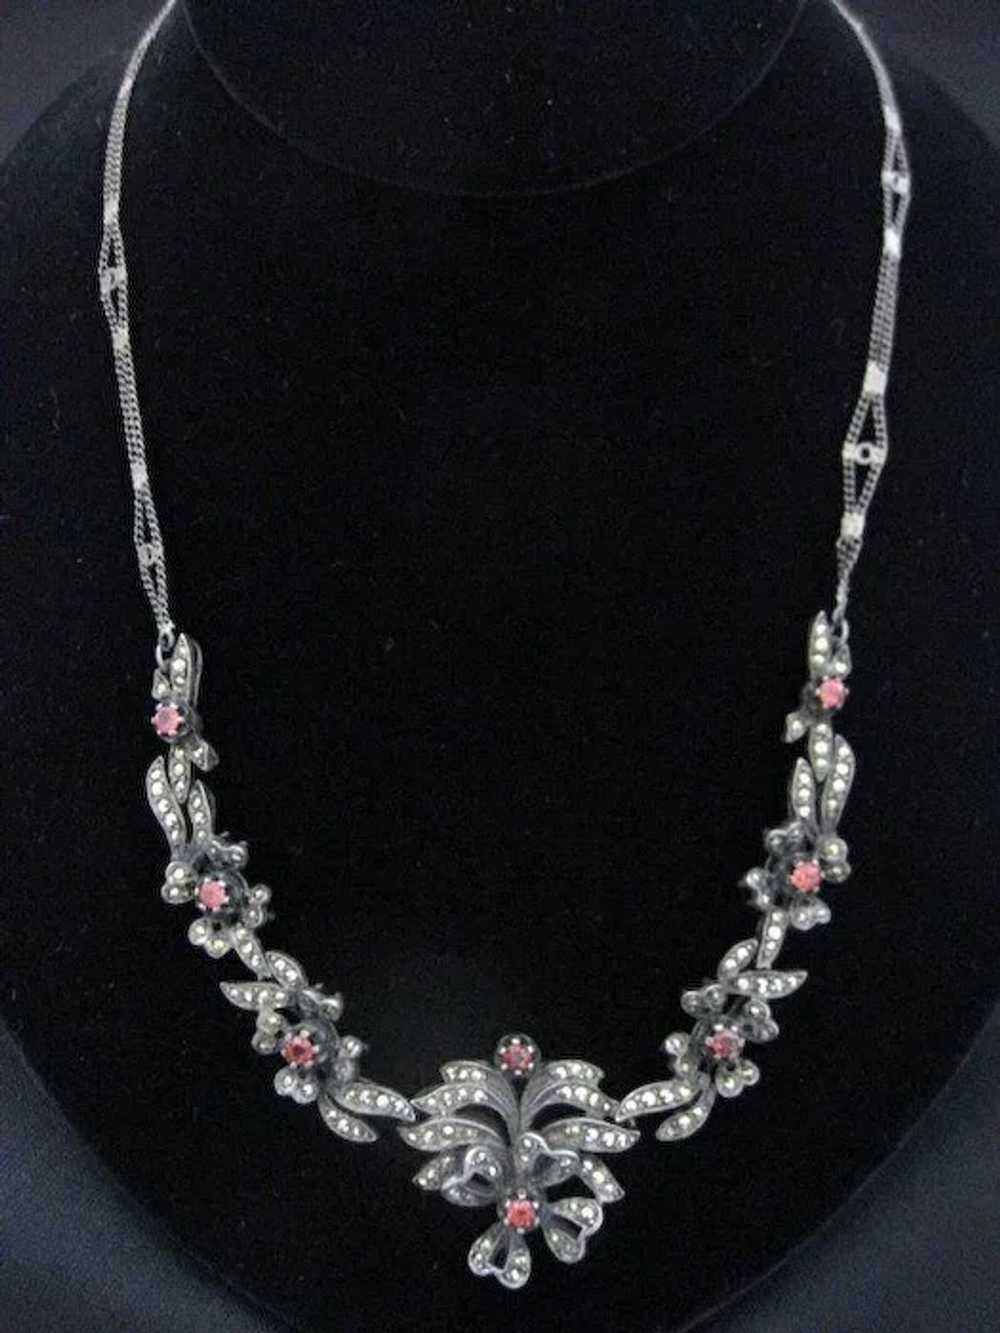 Rare Antique Spessartite Garnet Necklace - image 2